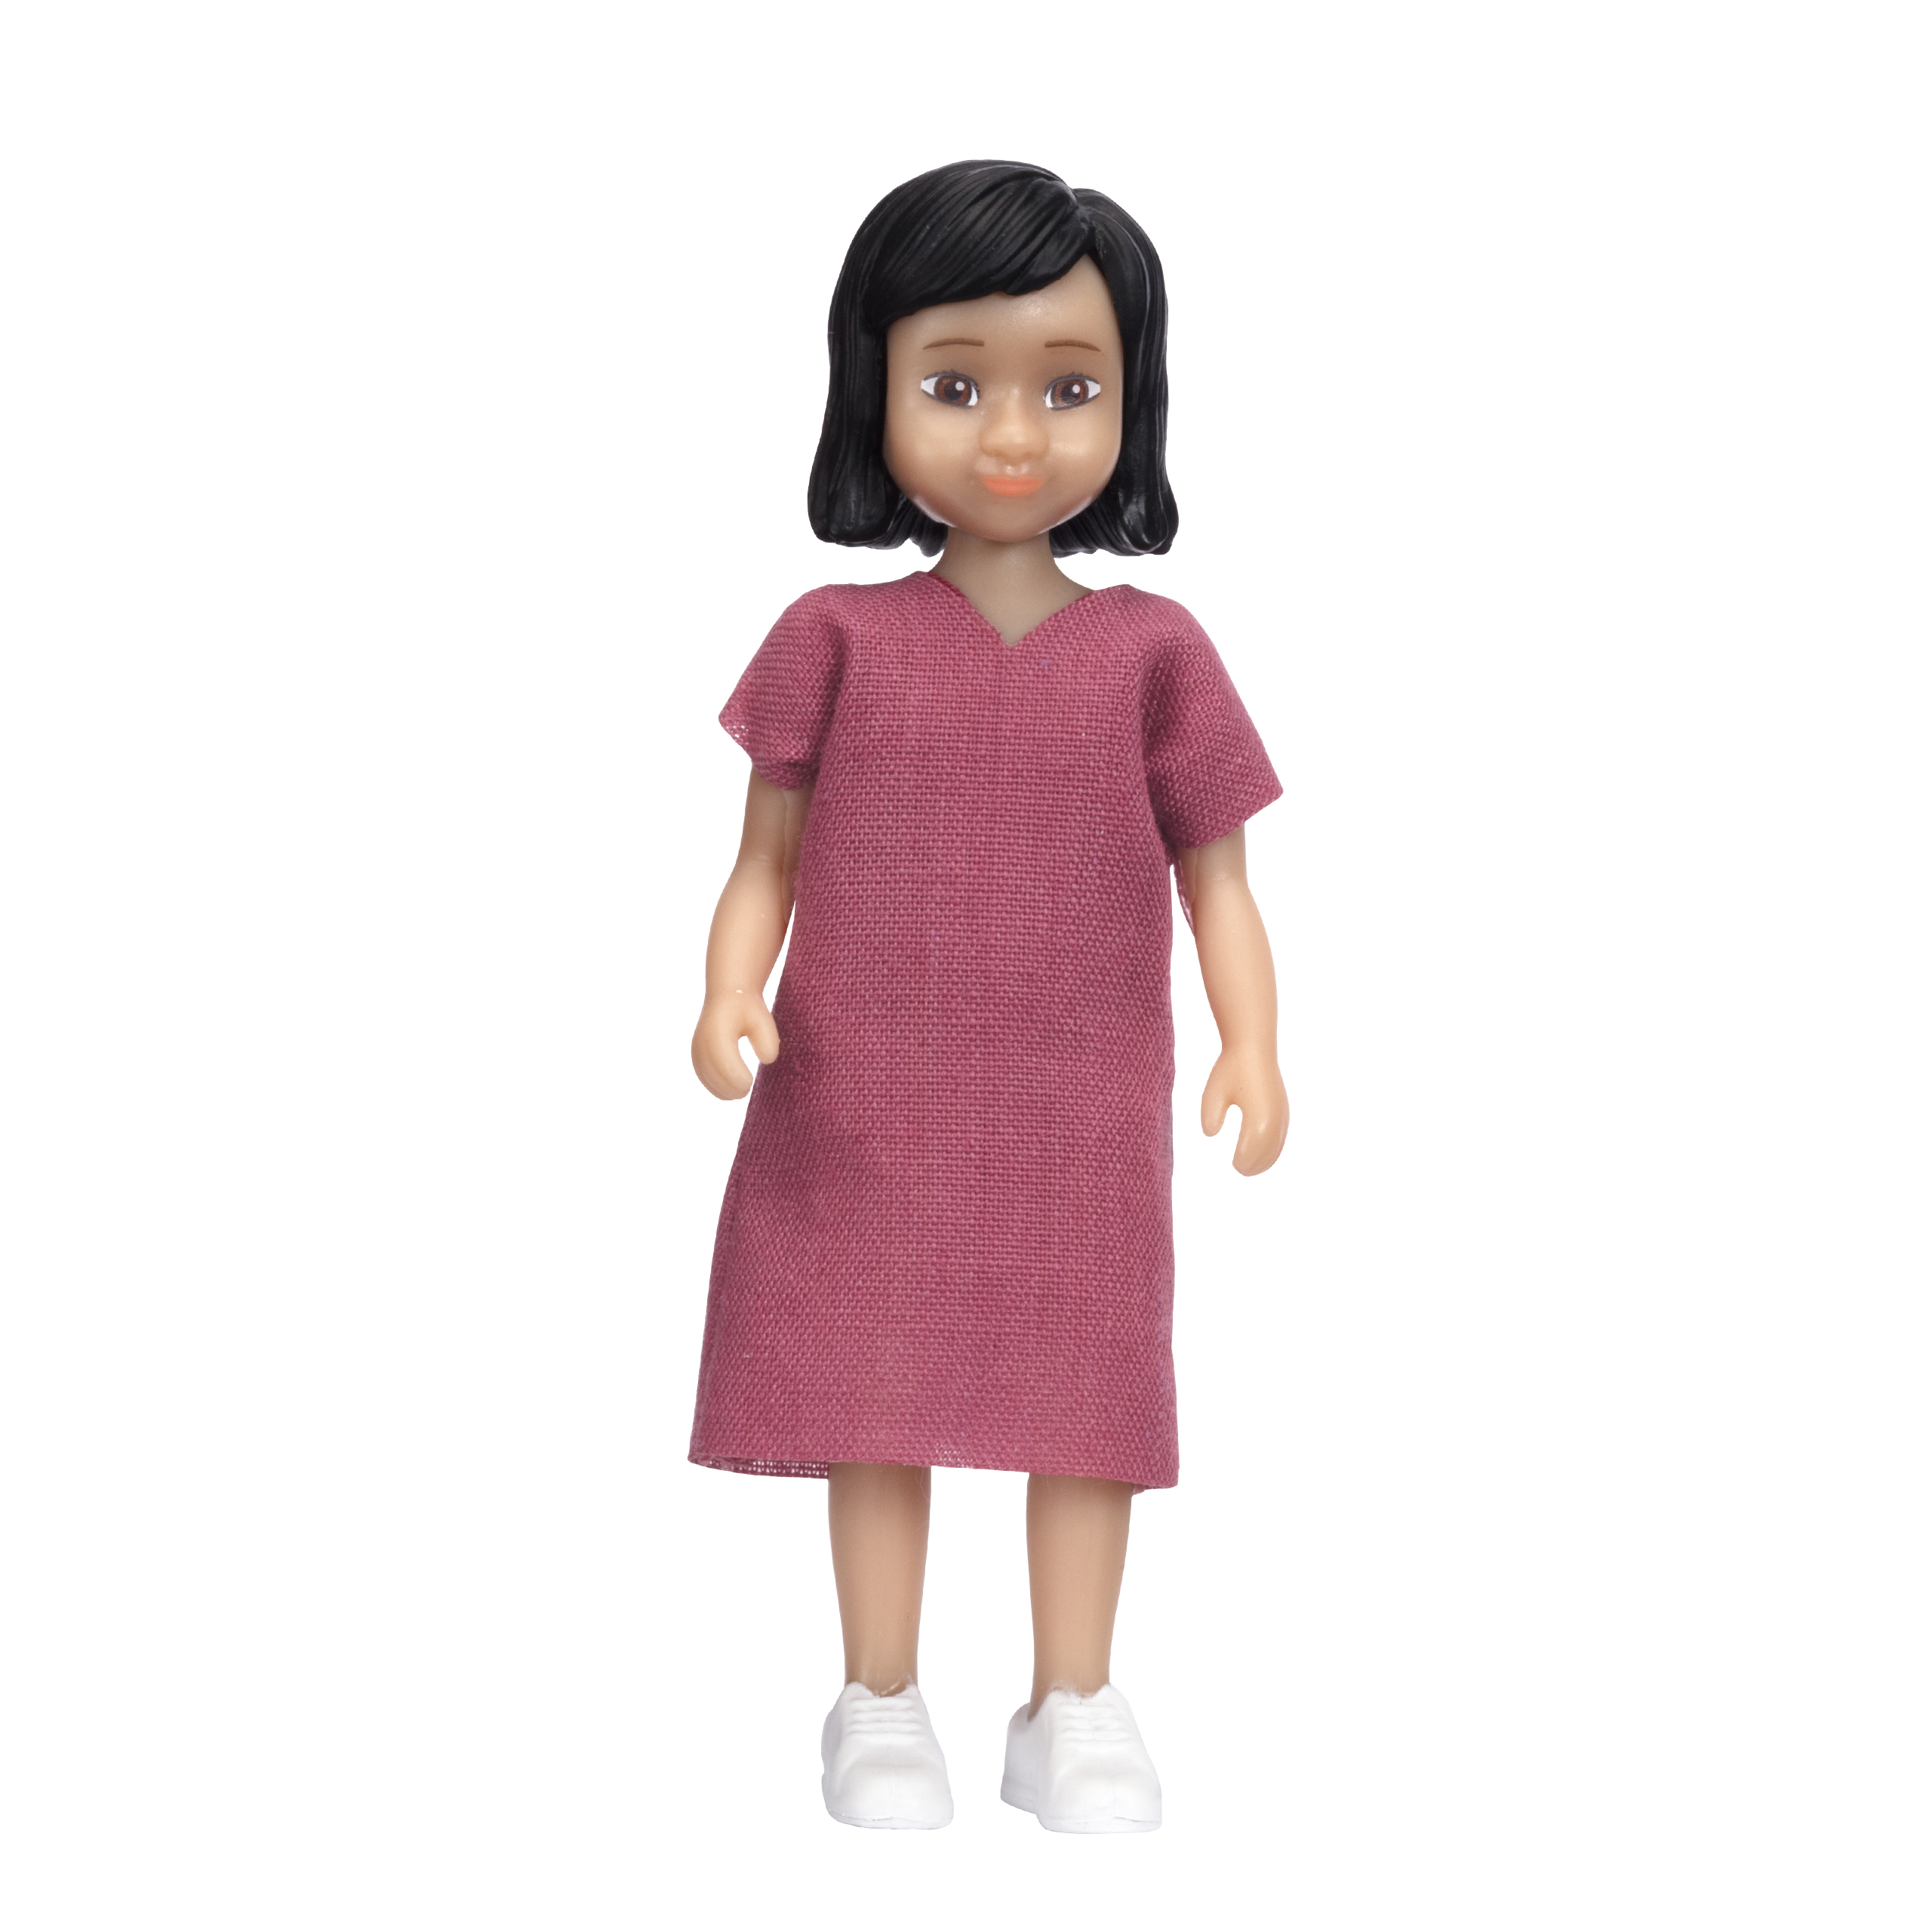 Dolls lundby dollhouse doll jamie girl